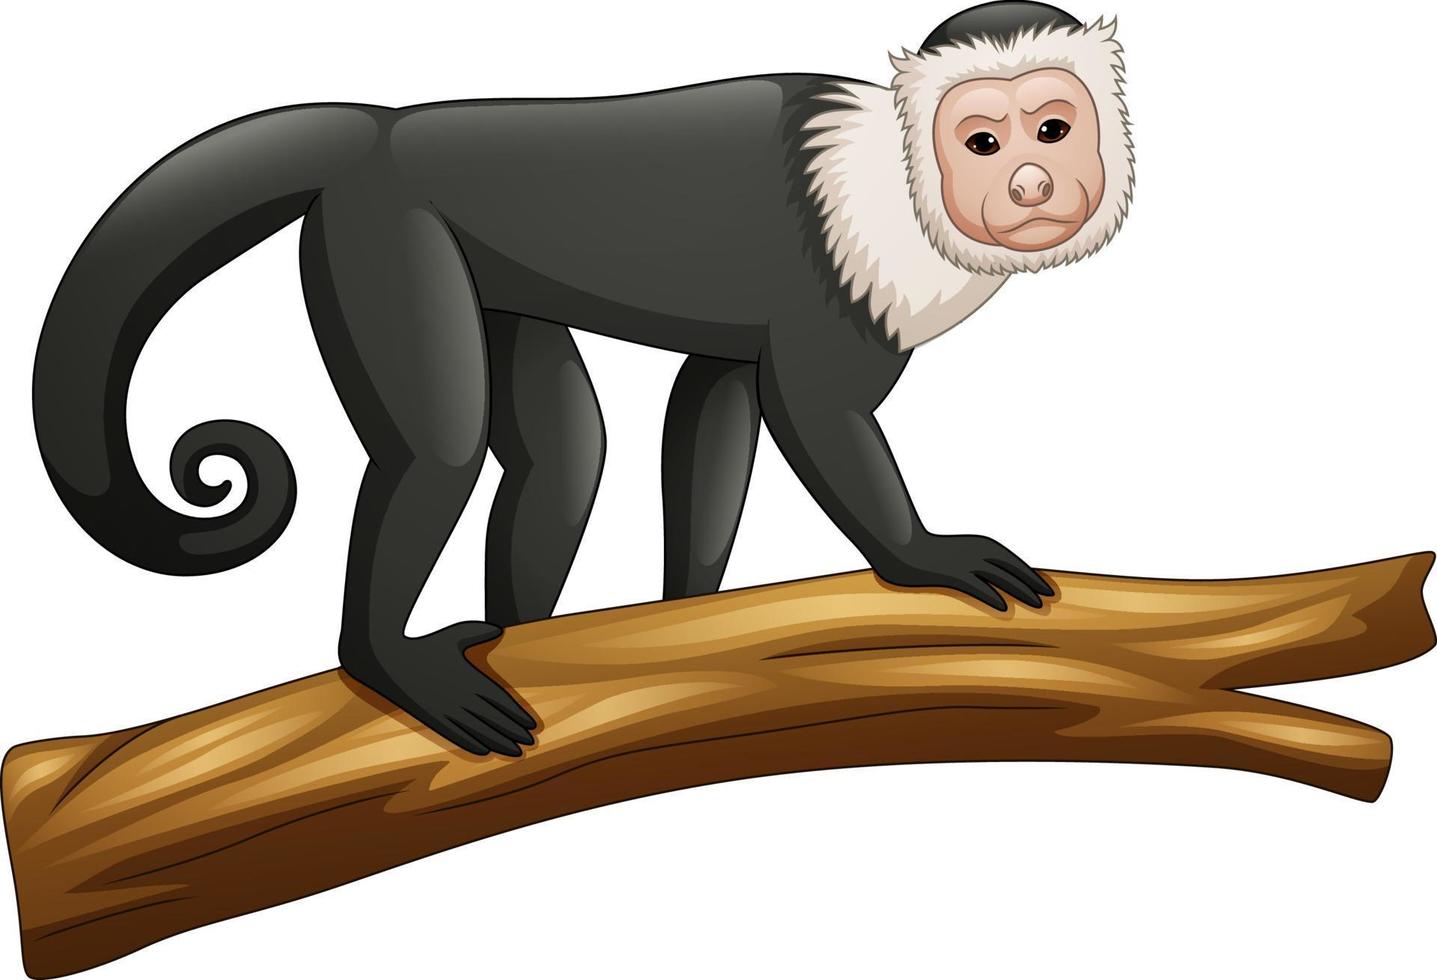 Design PNG E SVG De Ilustração Da Cauda Da Perna Do Macaco-prego Para  Camisetas